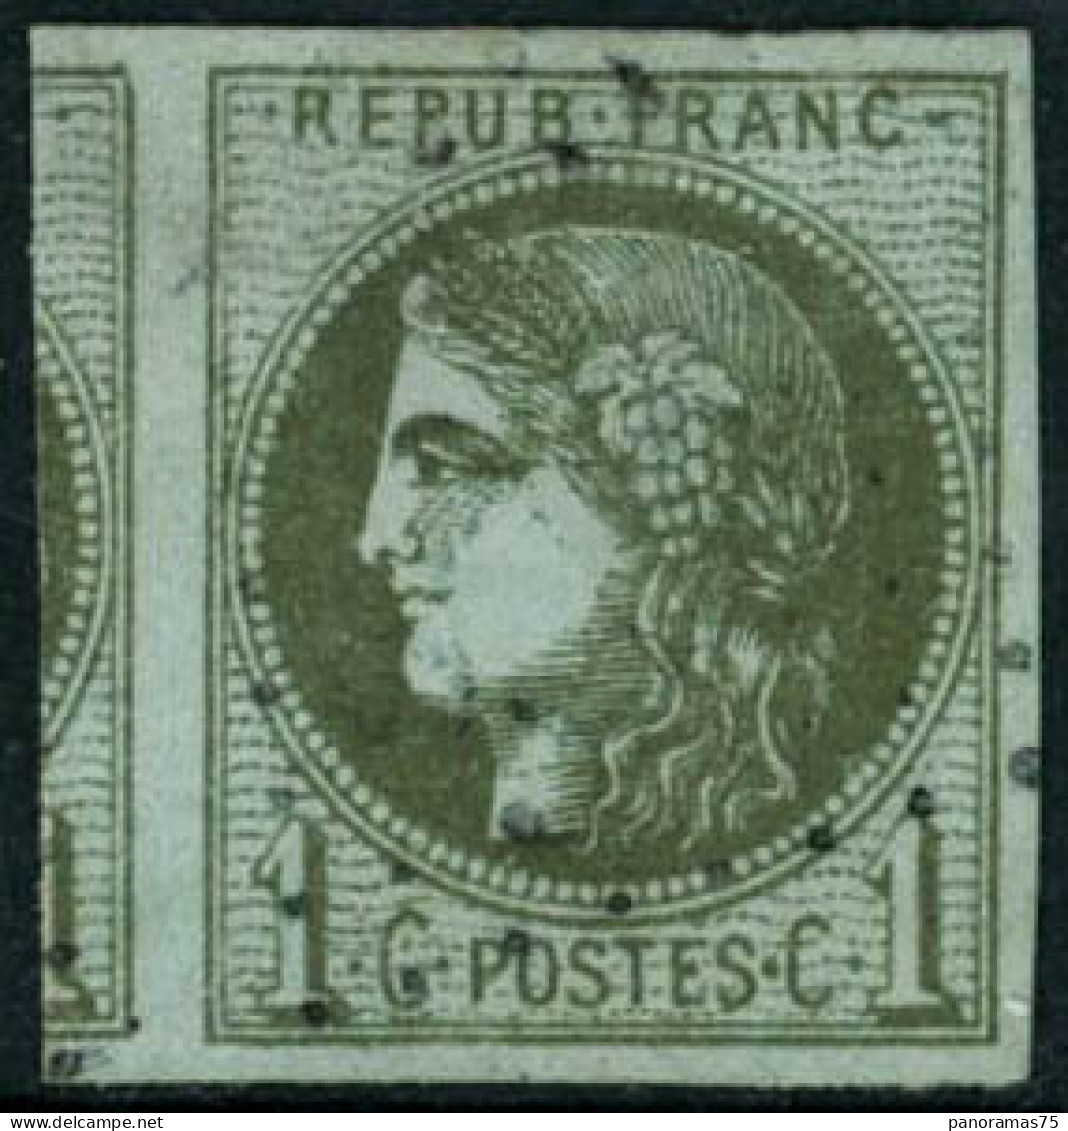 Obl. N°39B 1c Olive R2 - TB - 1870 Ausgabe Bordeaux